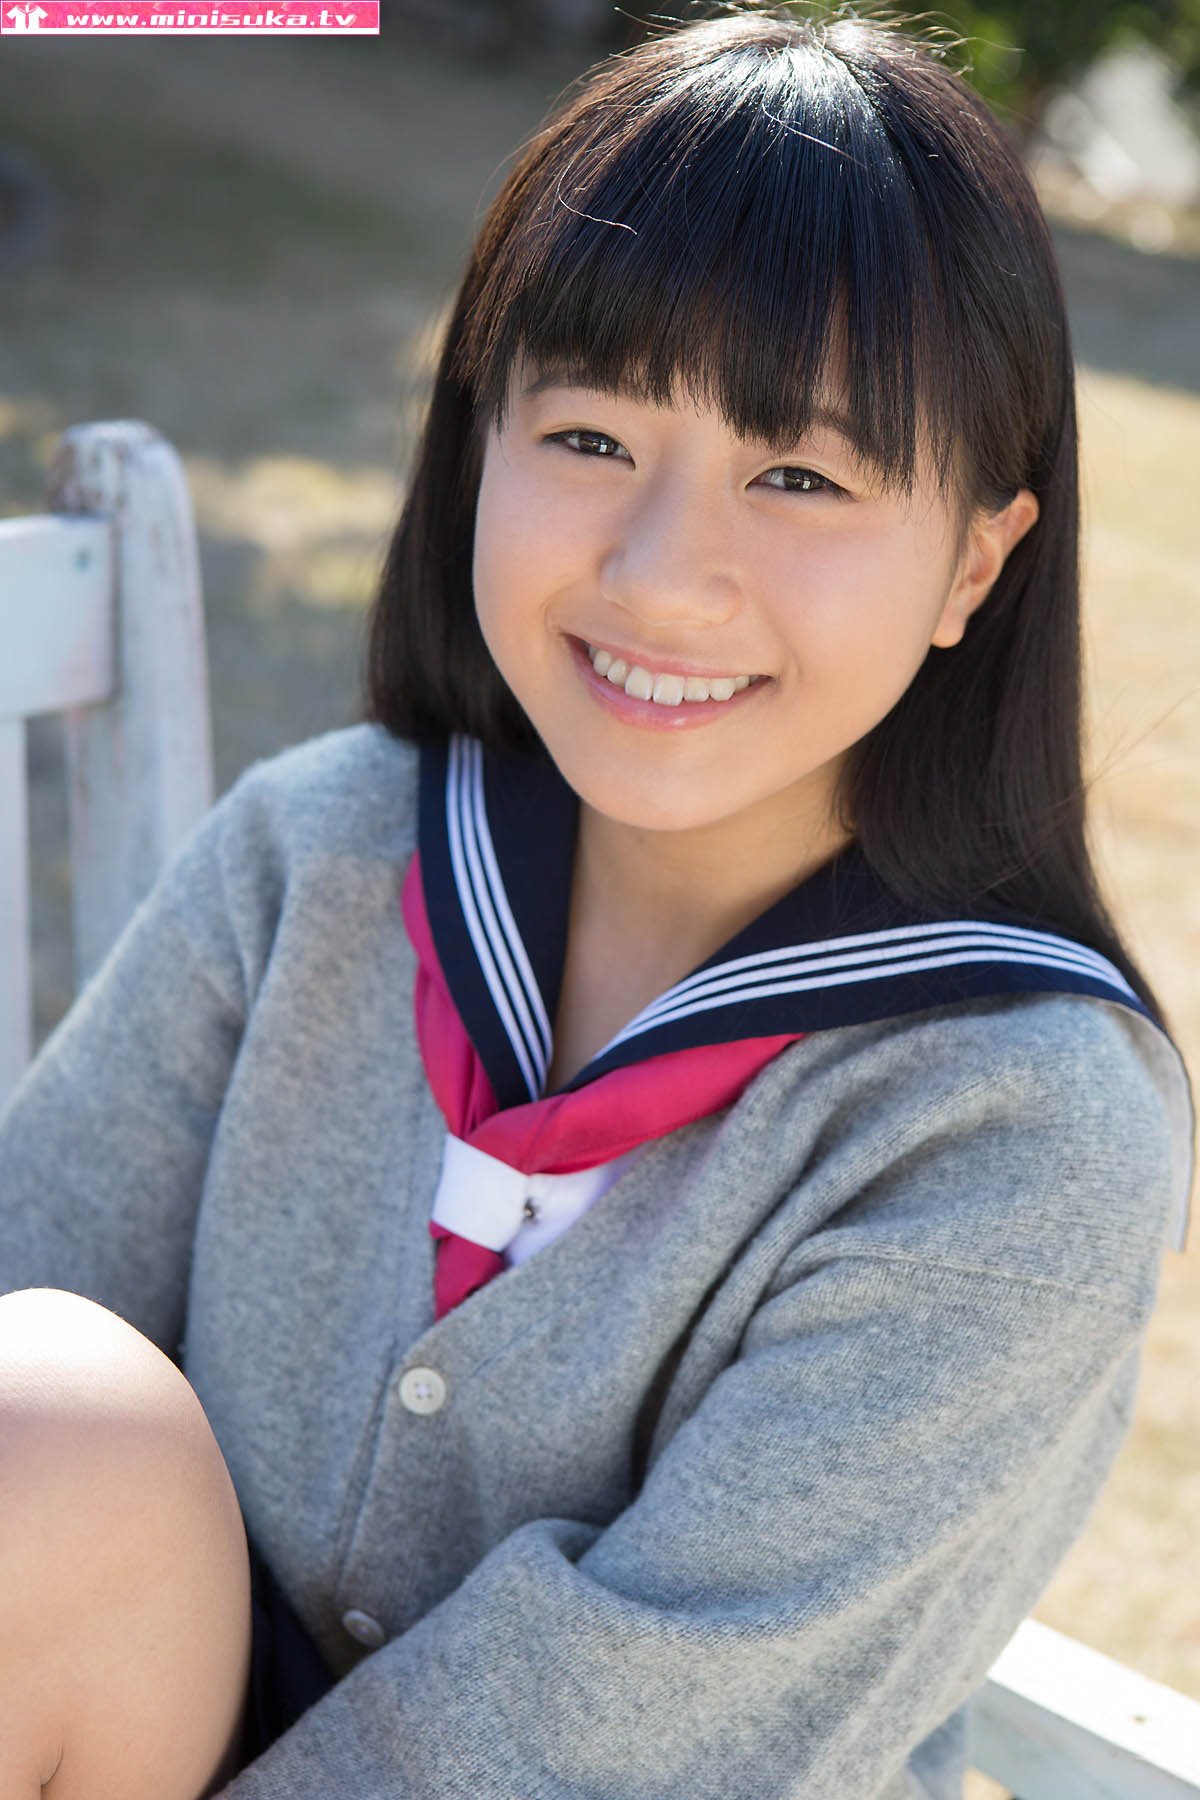 [Bomb.TV] Suika 日本萝莉少女3 写真集 高清大图在线浏览 - 新美图录